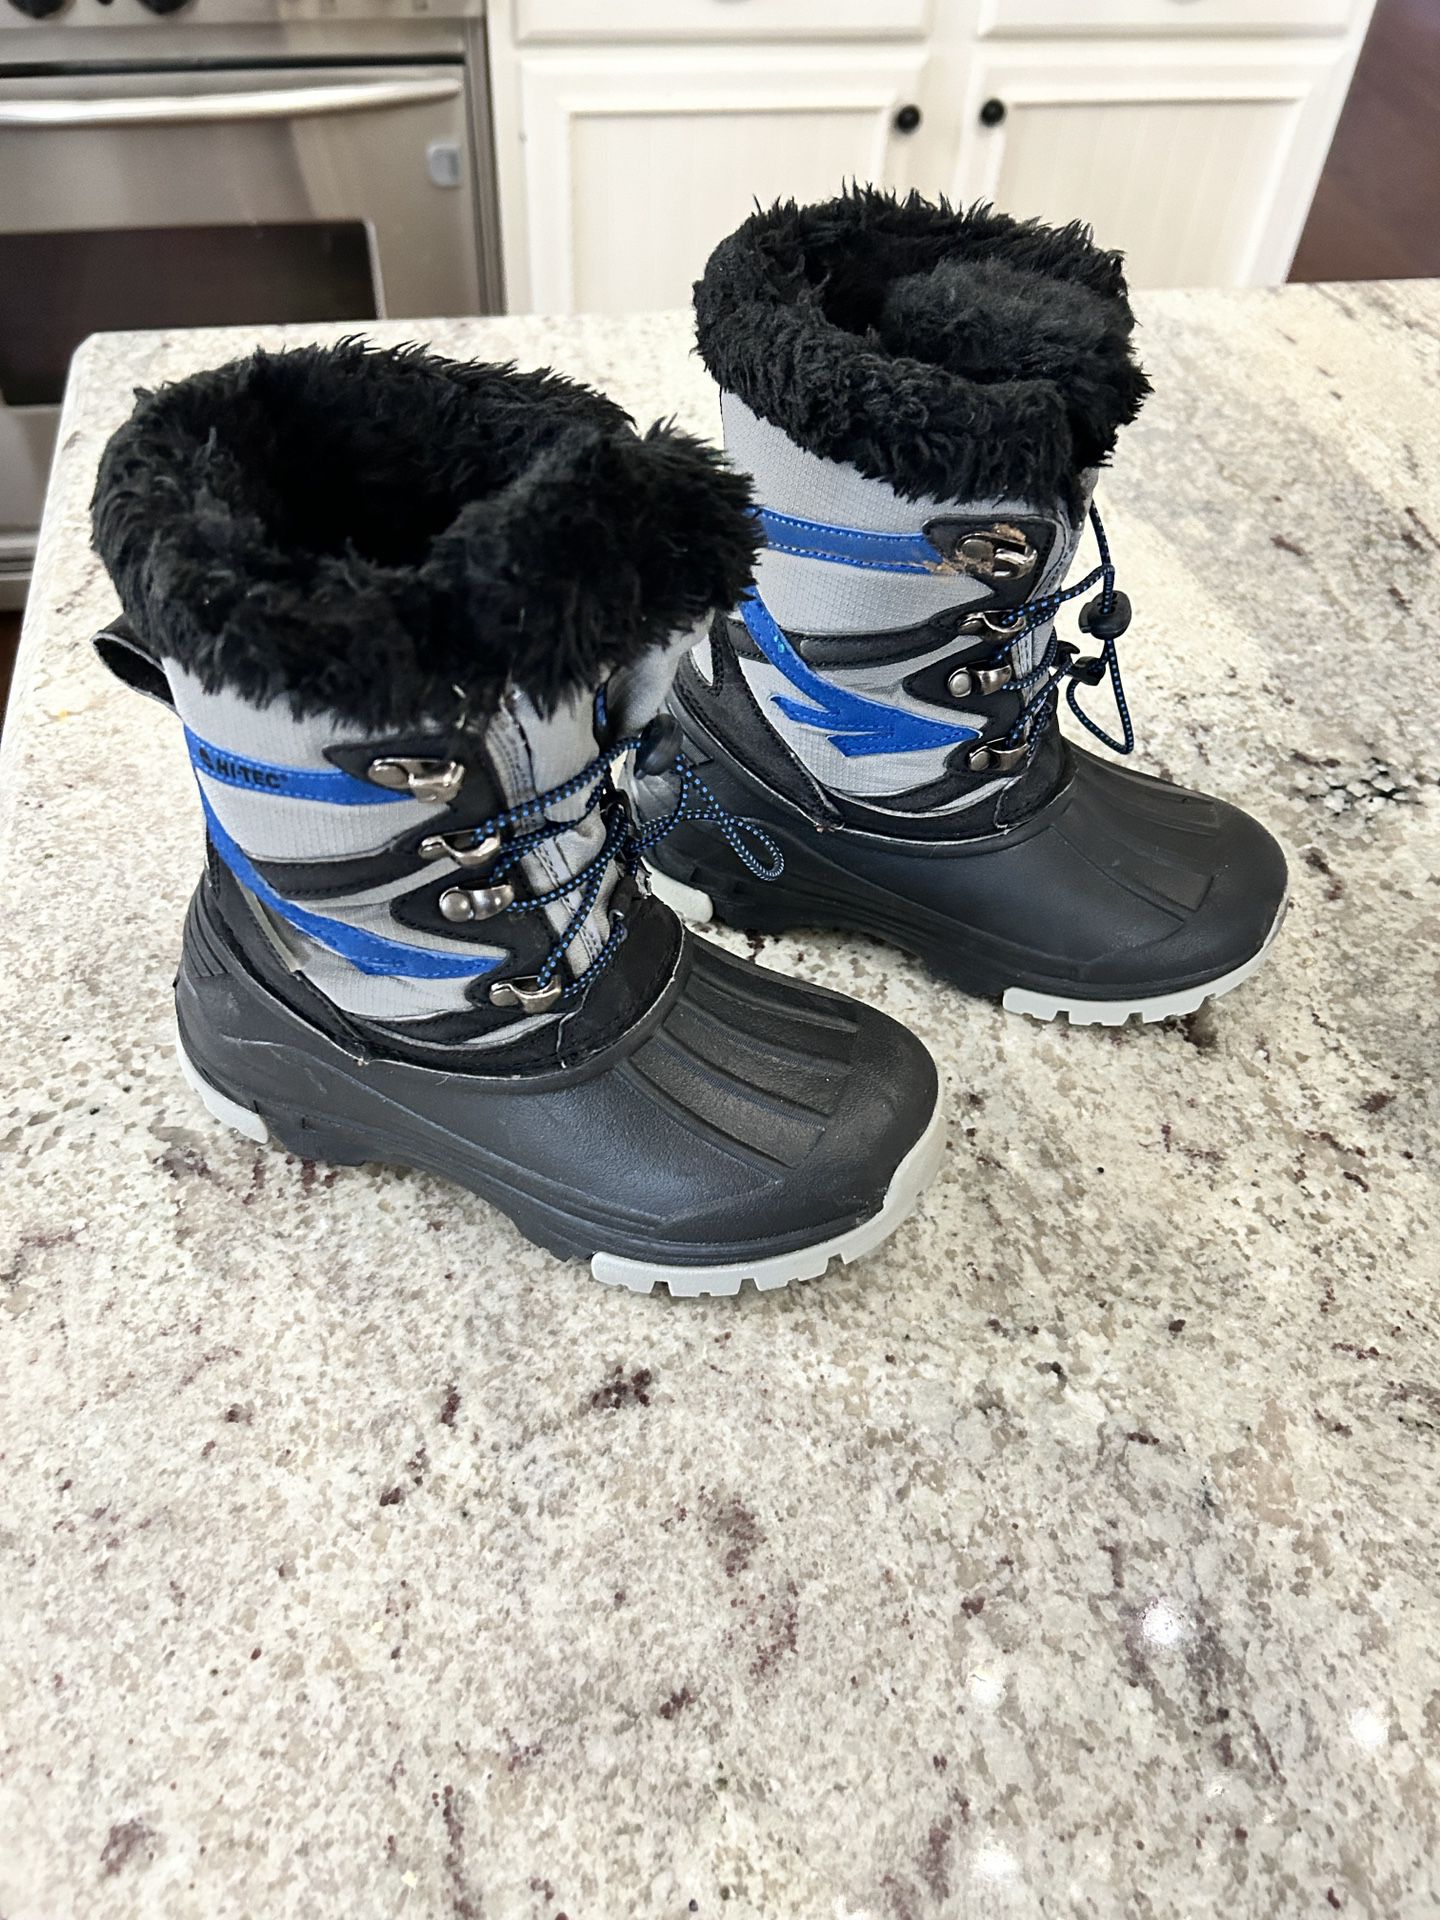 Boys Hi-Tec Snow Boots Size 1